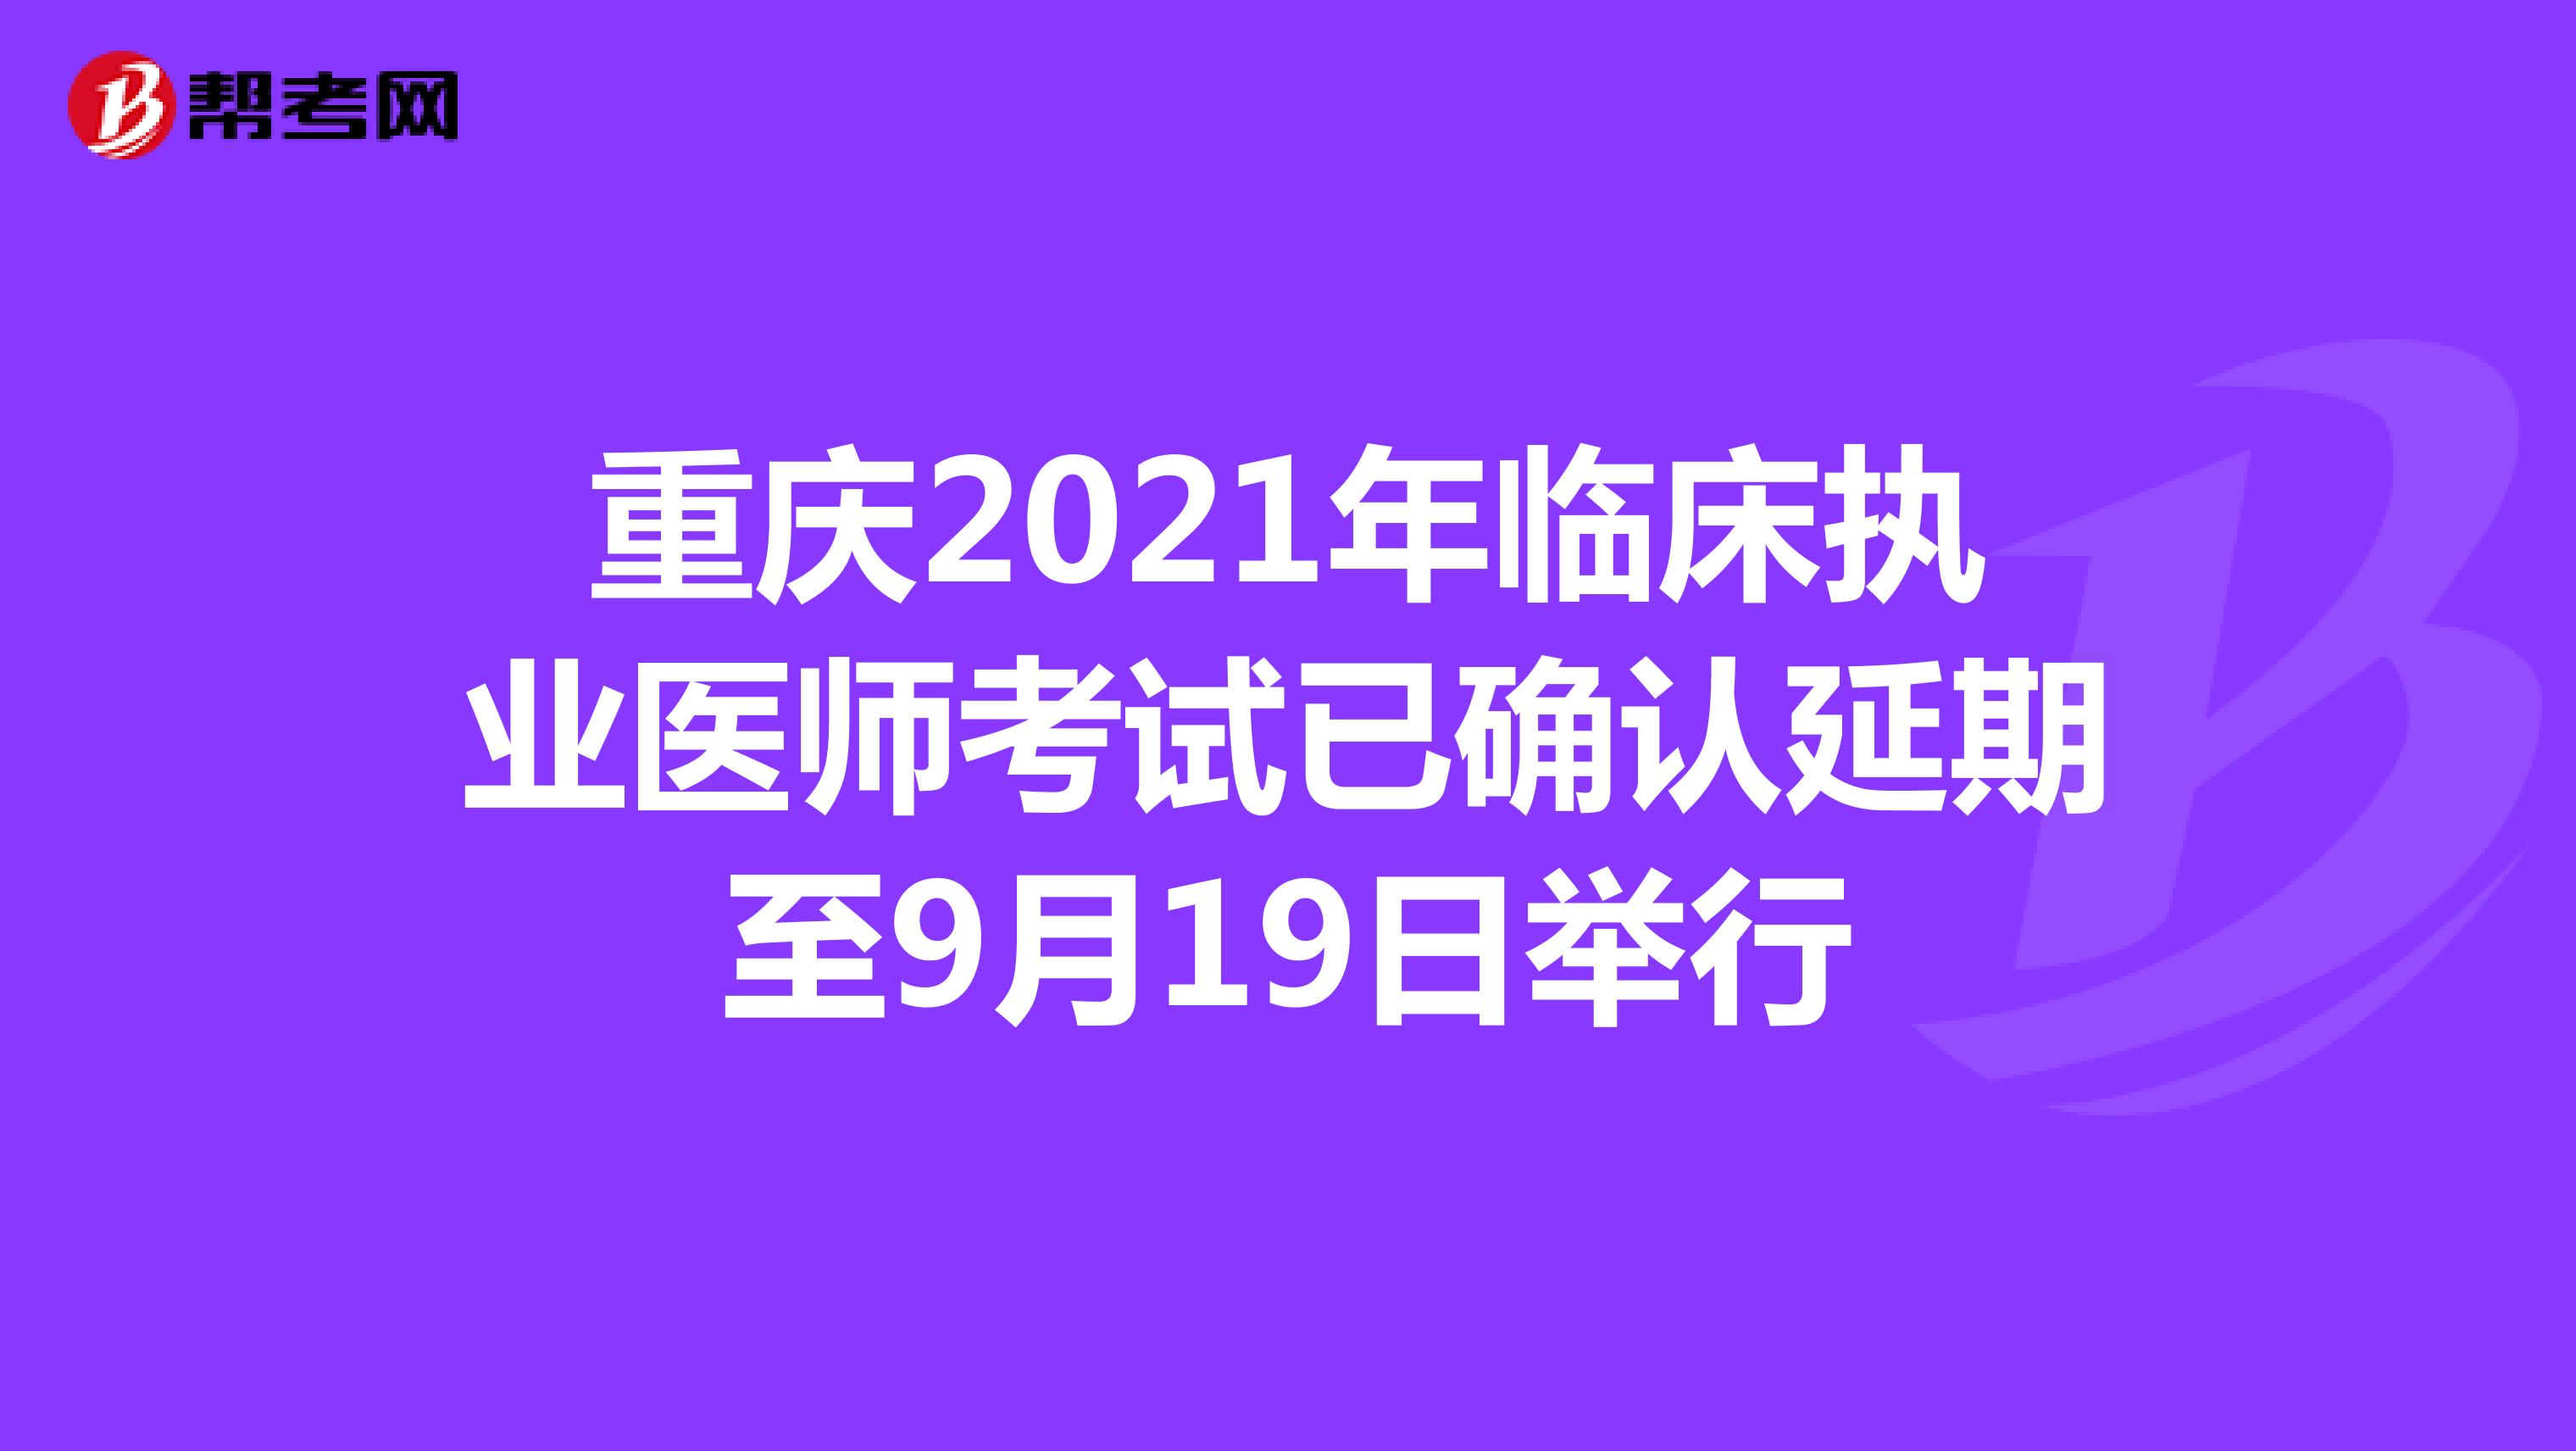 重庆2021年临床执业医师考试已确认延期至9月19日举行